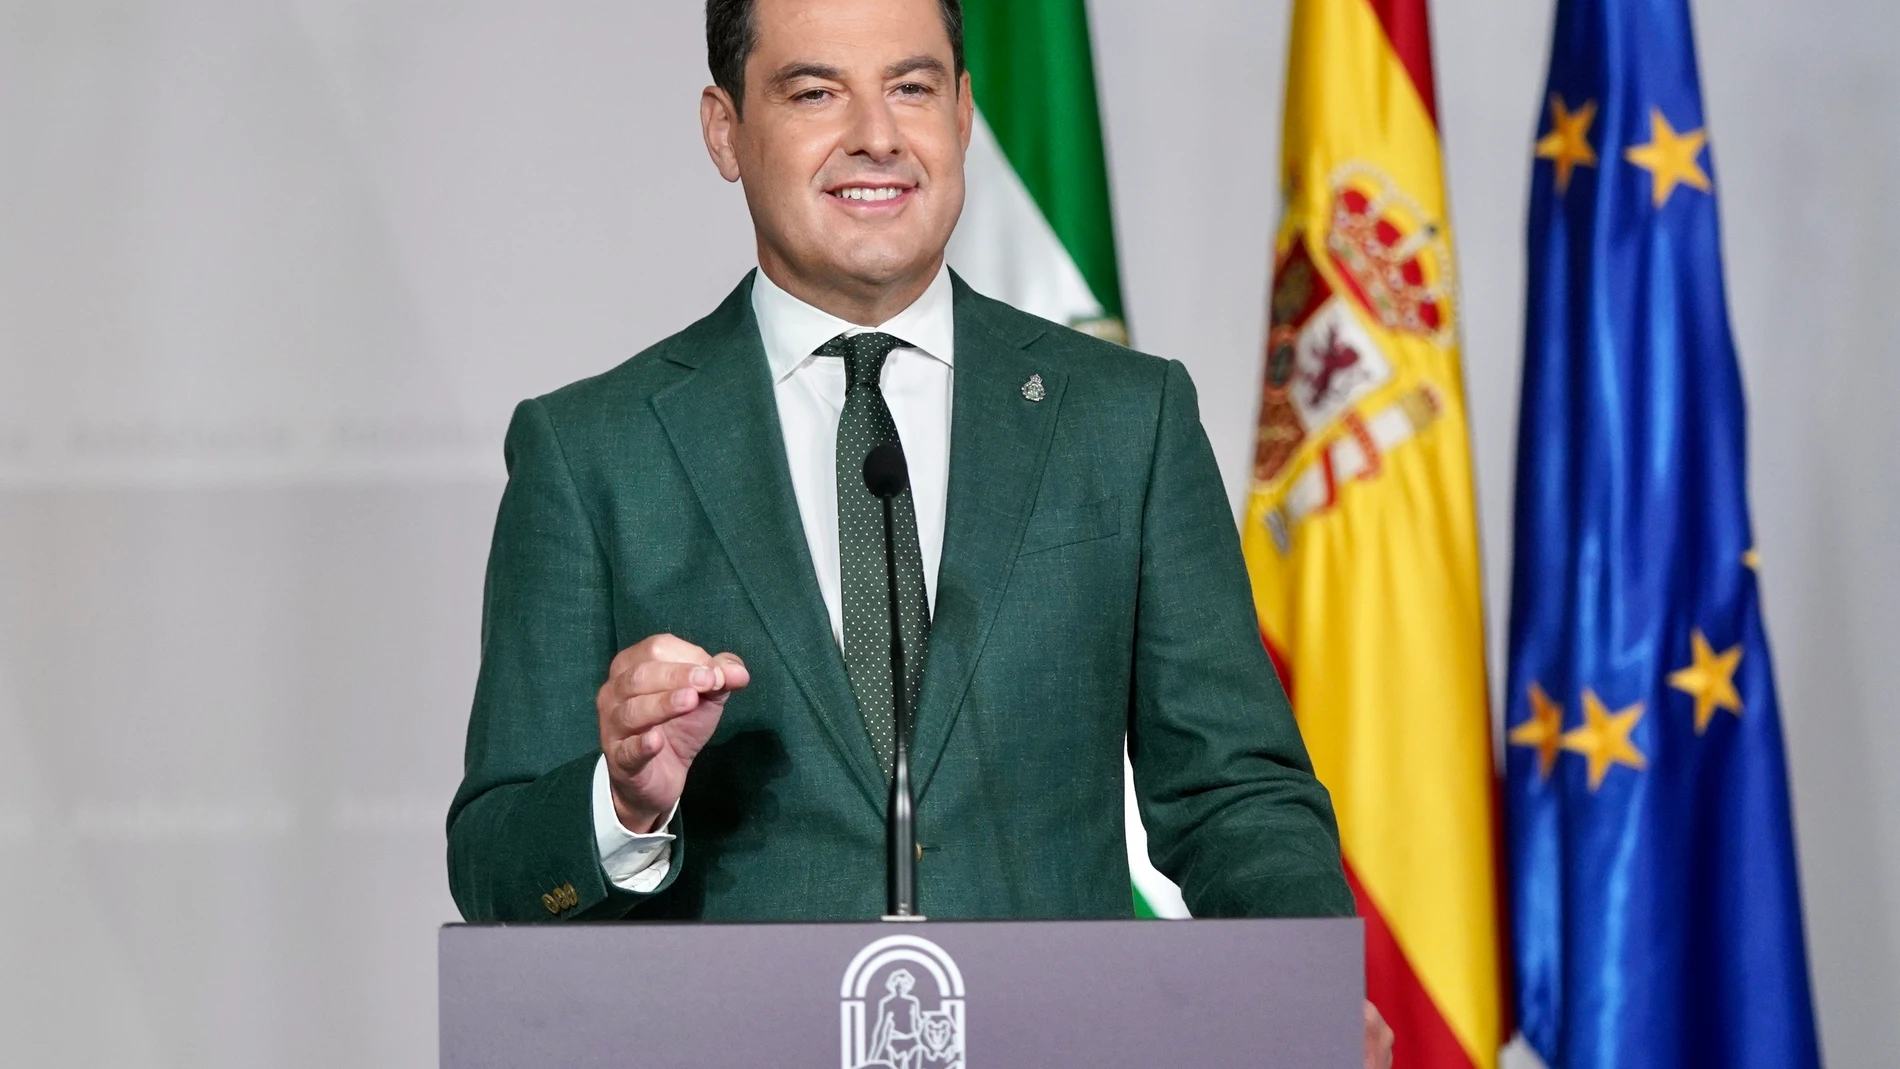 El presidente de la Junta de Andalucía, Juanma Moreno, este martesJUNTA DE ANDALUCÍA28/09/2021